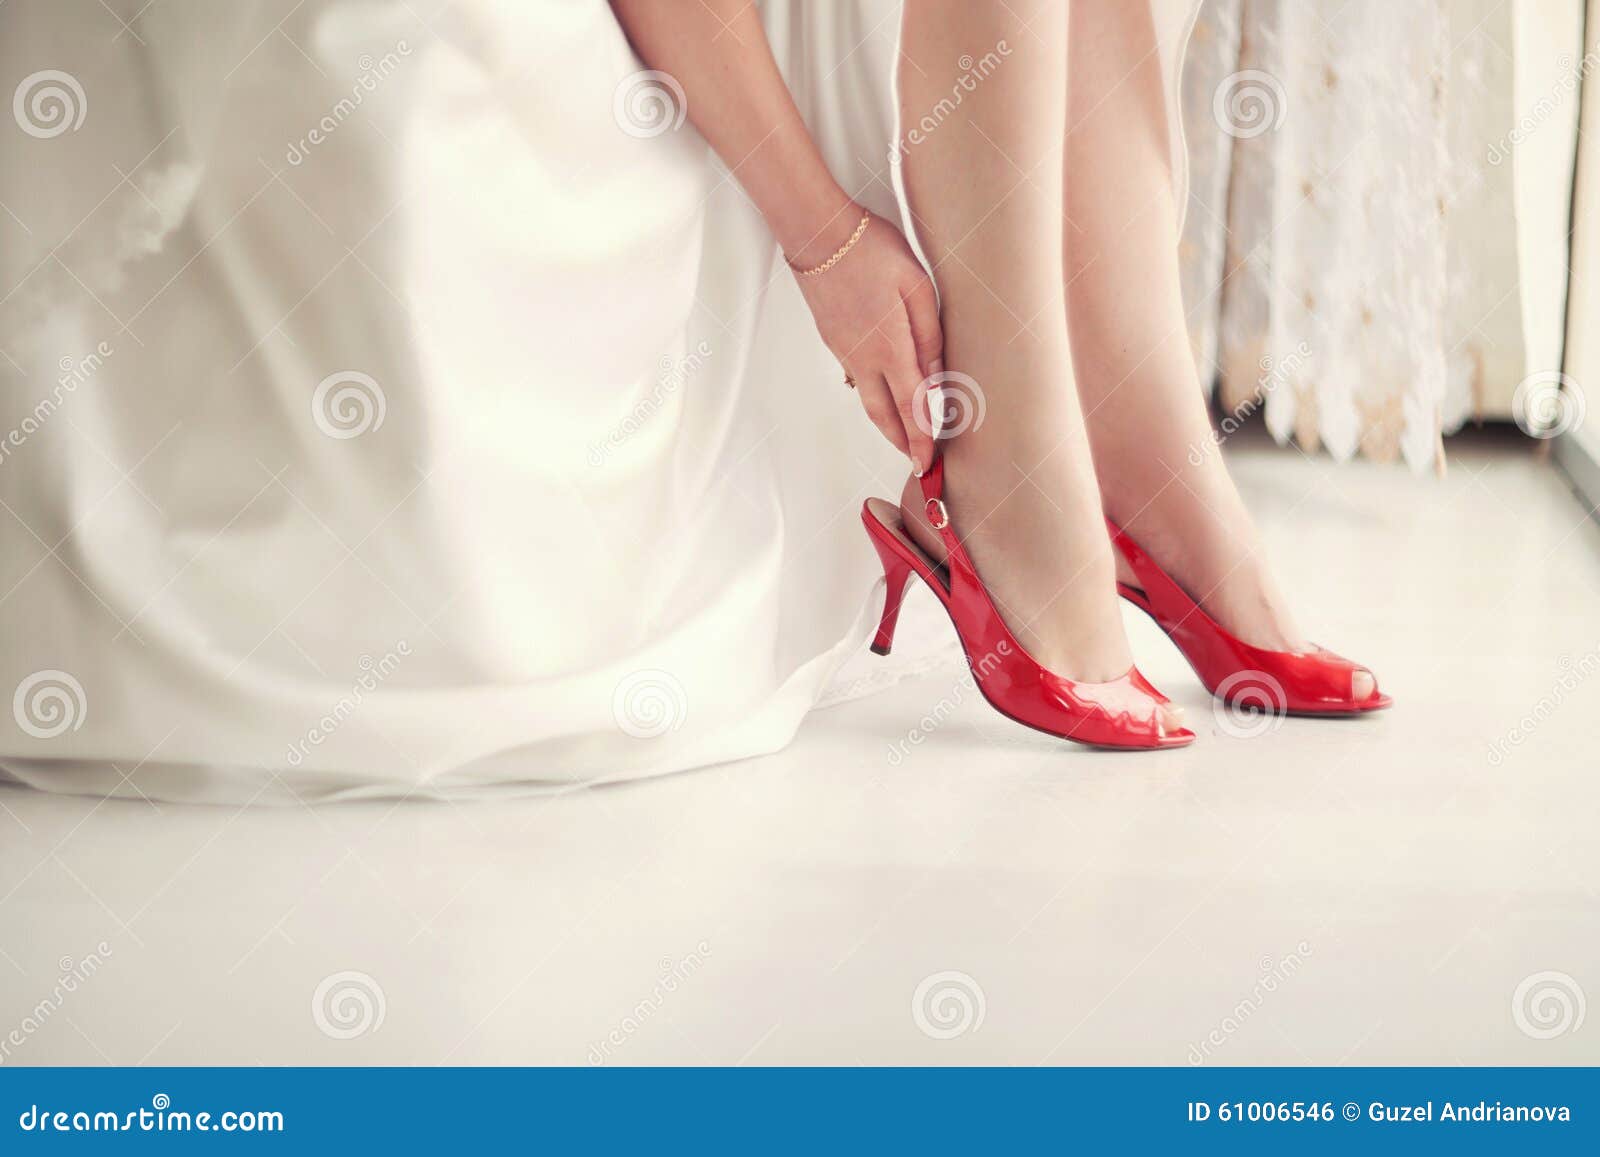 Novia en zapatos rojos foto de archivo. Imagen de casado 61006546